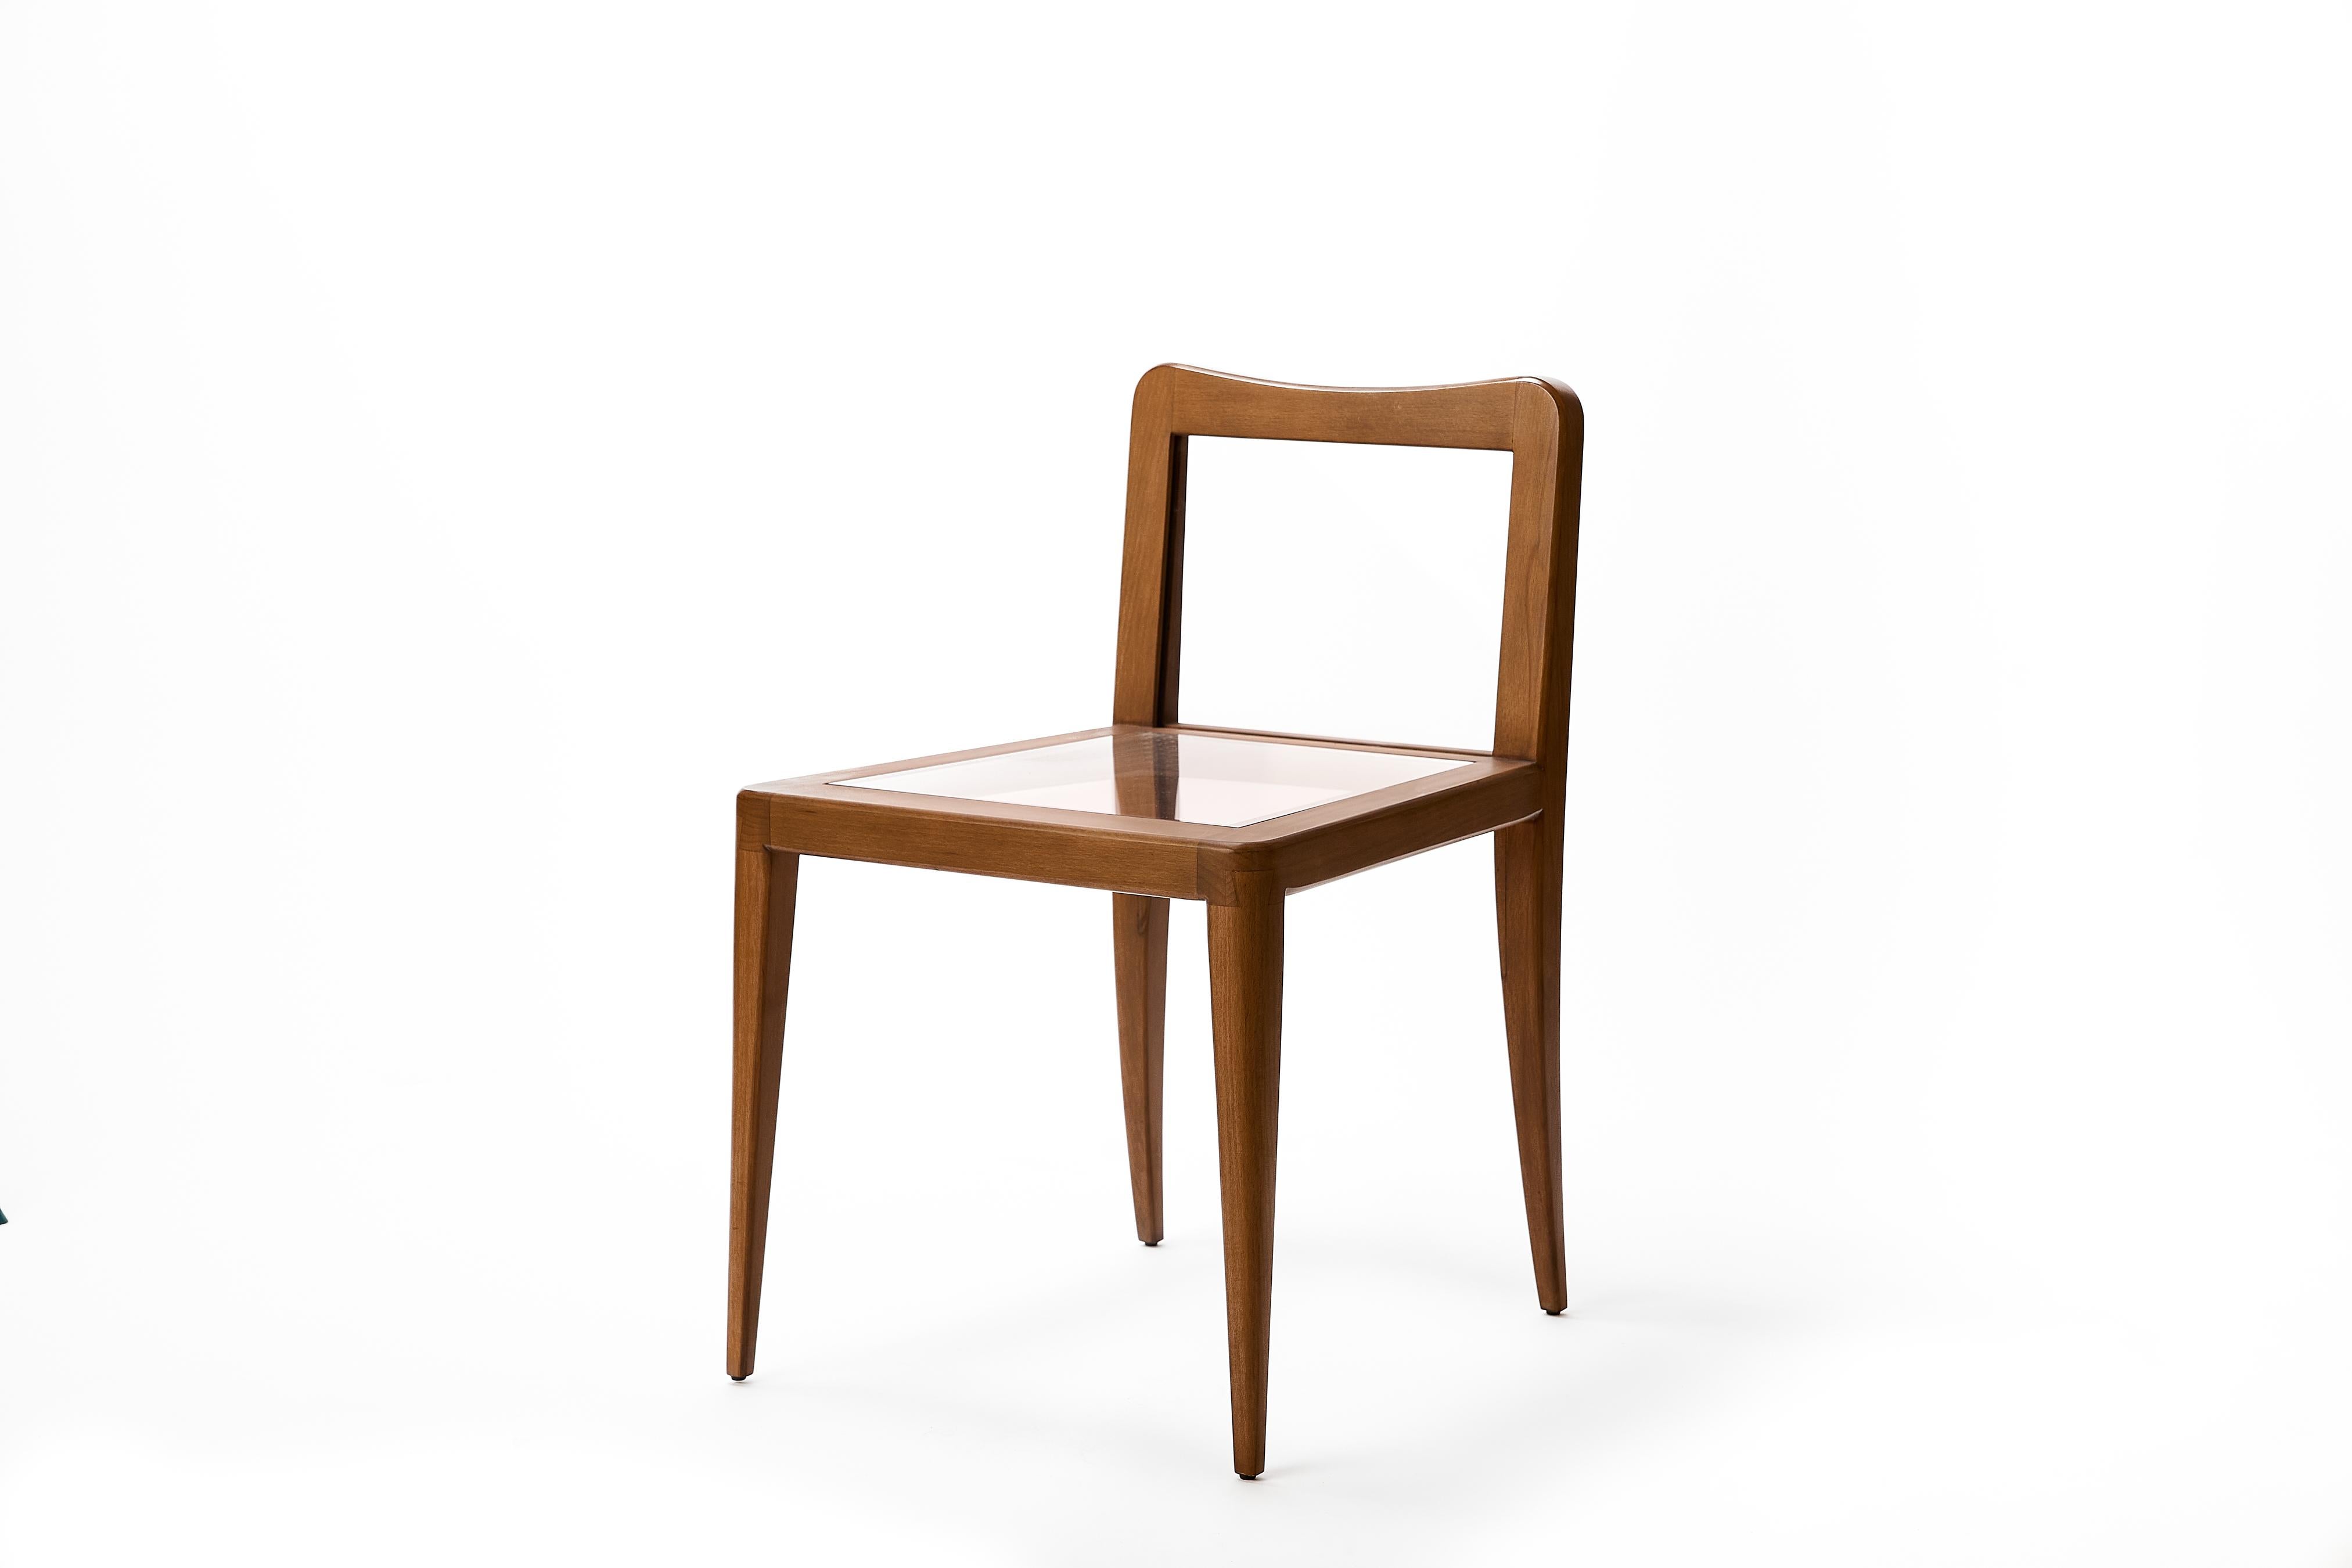 La Petite Wood Float Chair brouille les frontières entre l'art et le mobilier et encourage un dialogue interne avec le spectateur. Est-ce de l'art ou puis-je m'asseoir dedans ? Les deux. Fabriqué à la main en noyer massif, le cadre large et anguleux